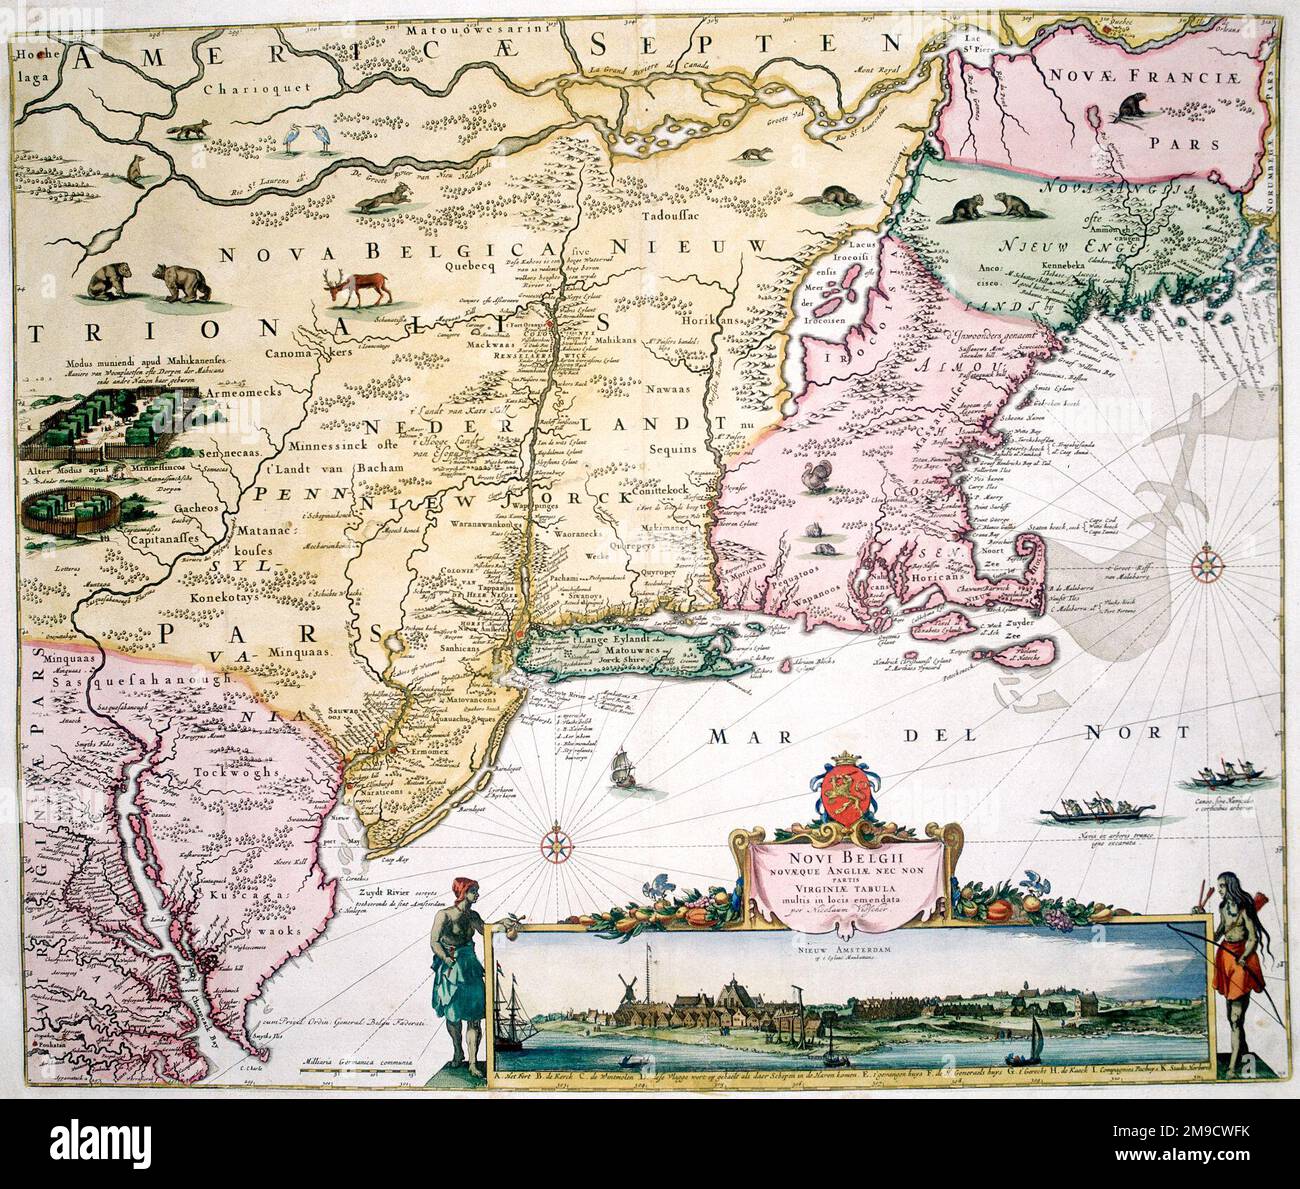 Mappa del 17th° secolo del New Belgium, America - New York, New Jersey e Pennsylvania - Nova Belgi Novaque Angliae nec non partis Virginiae Tabula Foto Stock